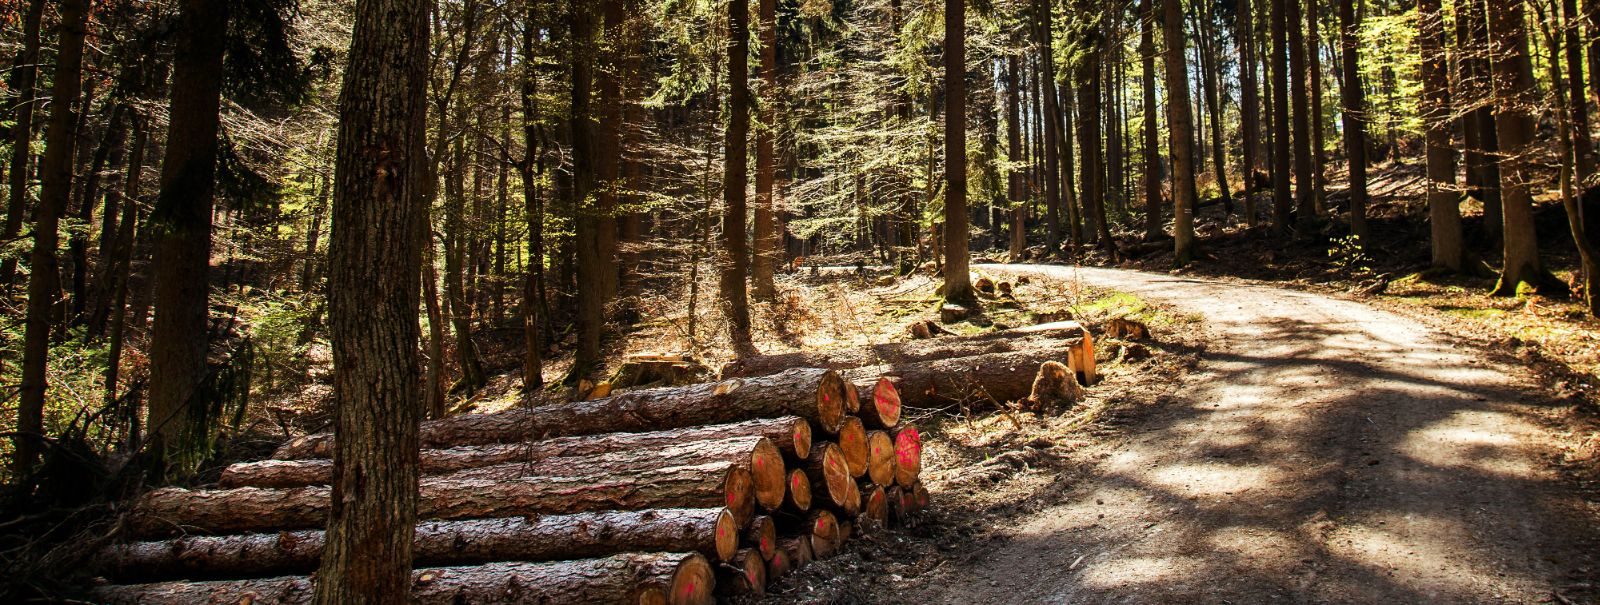 KM Mets OÜ alustas tegevust oktoobris 2008. KM Mets OÜ tegeleb puiduvarumisega, metsauuendamisega, metsa hooldamisega, kasvava metsa ning metsamaterjali ja hakk